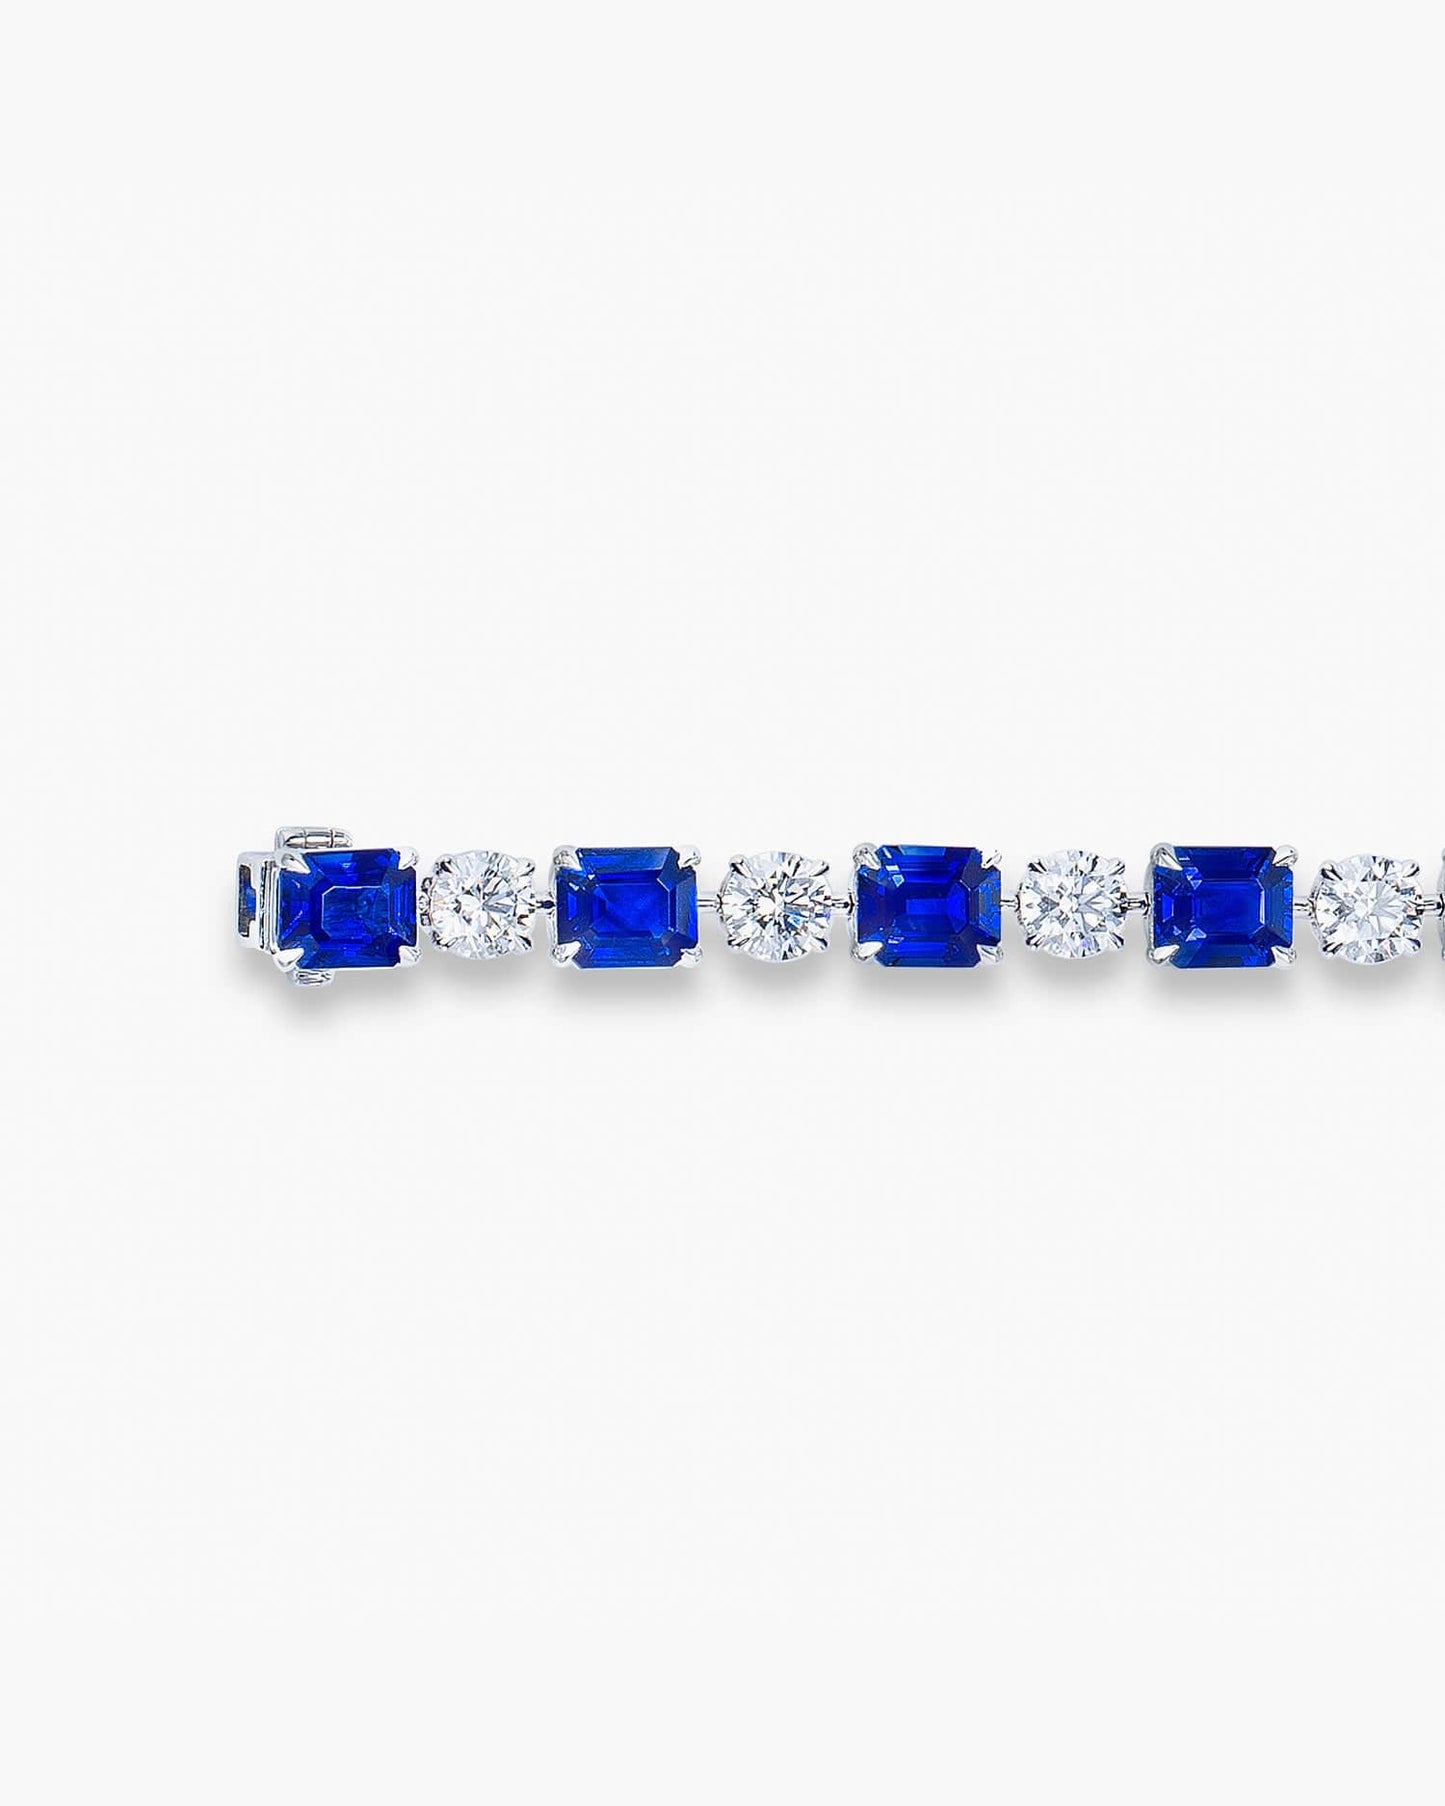 Emerald Cut Sapphire and Diamond Bracelet (0.95 carat)